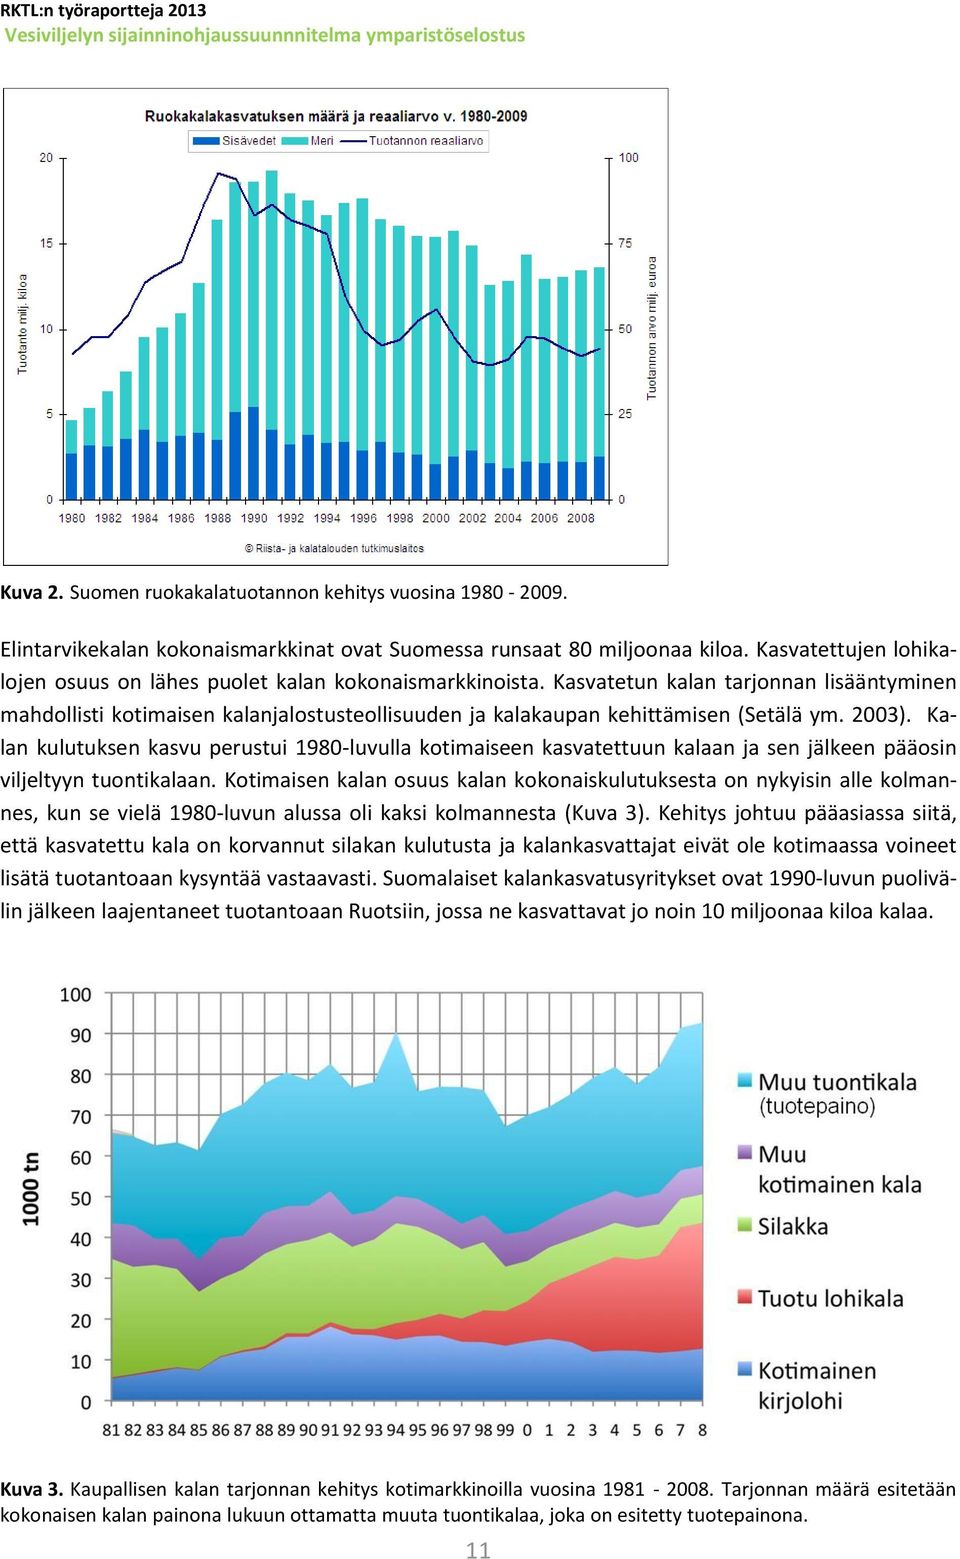 Kasvatetun kalan tarjonnan lisääntyminen mahdollisti kotimaisen kalanjalostusteollisuuden ja kalakaupan kehittämisen (Setälä ym. 2003).